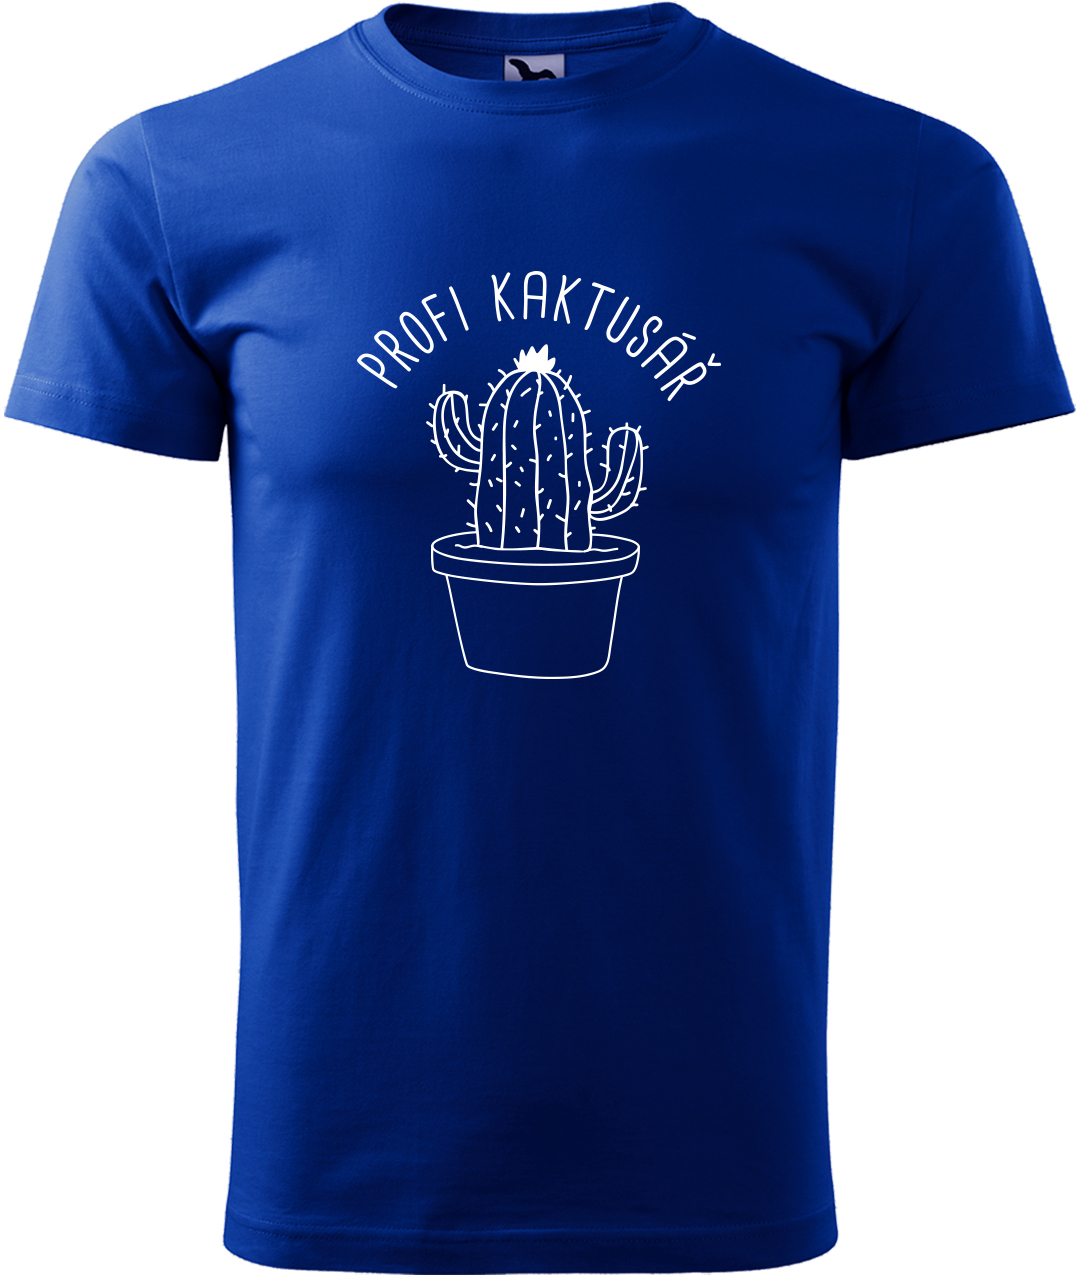 Tričko pro zahradníka - Profi kaktusář Velikost: L, Barva: Královská modrá (05), Střih: pánský